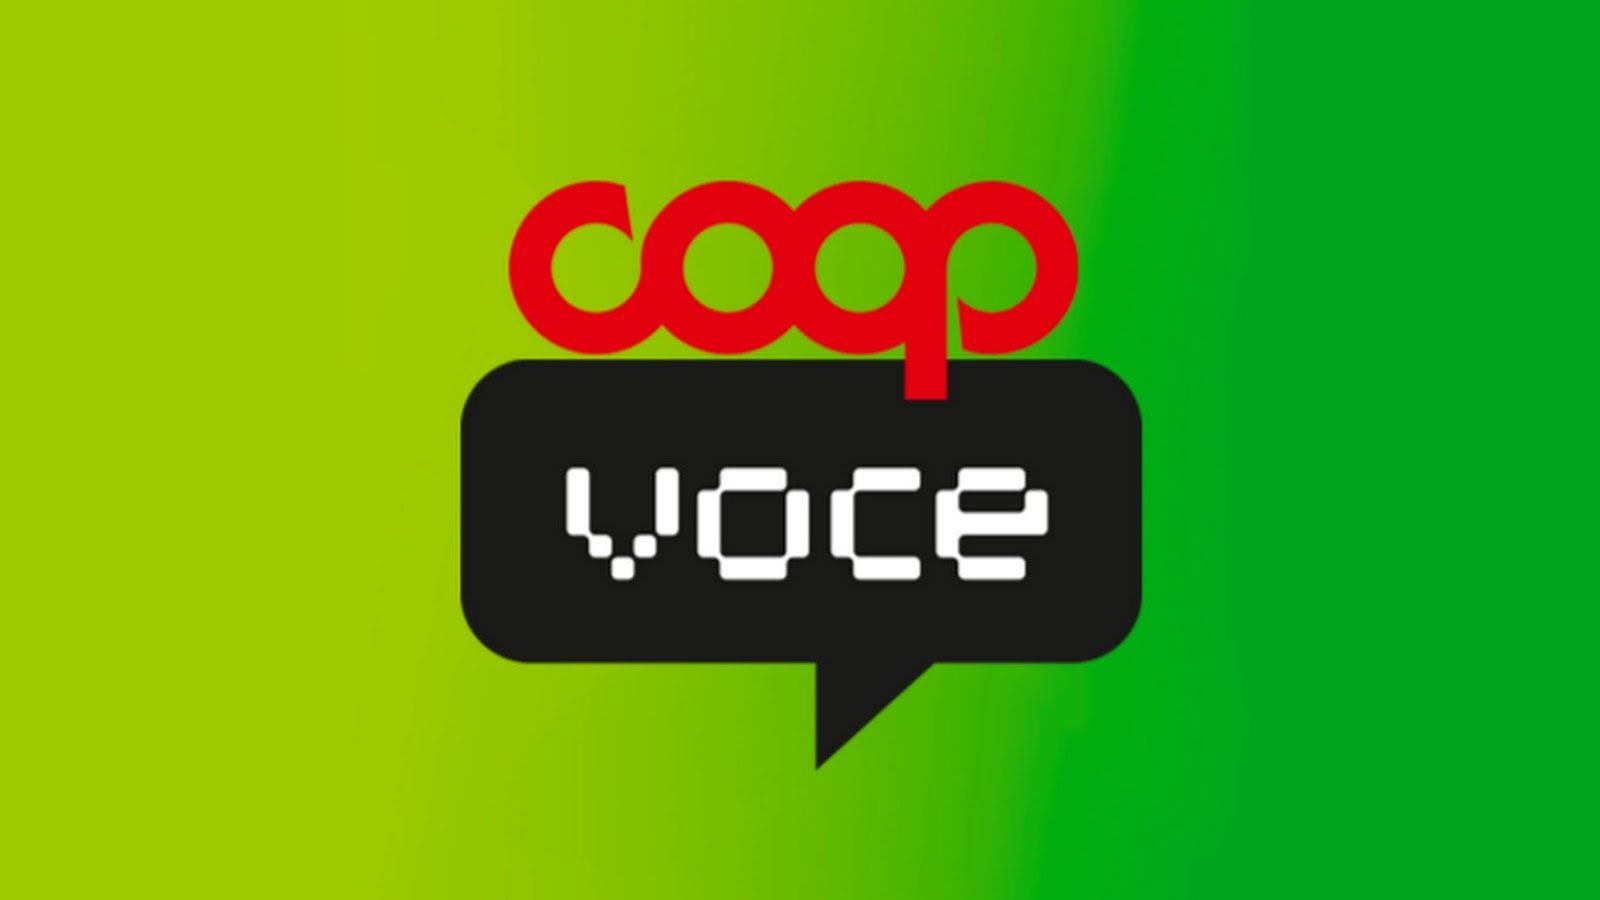 CoopVoce sfida ufficialmente TIM e Vodafone: nuove offerte con regalo incredibile